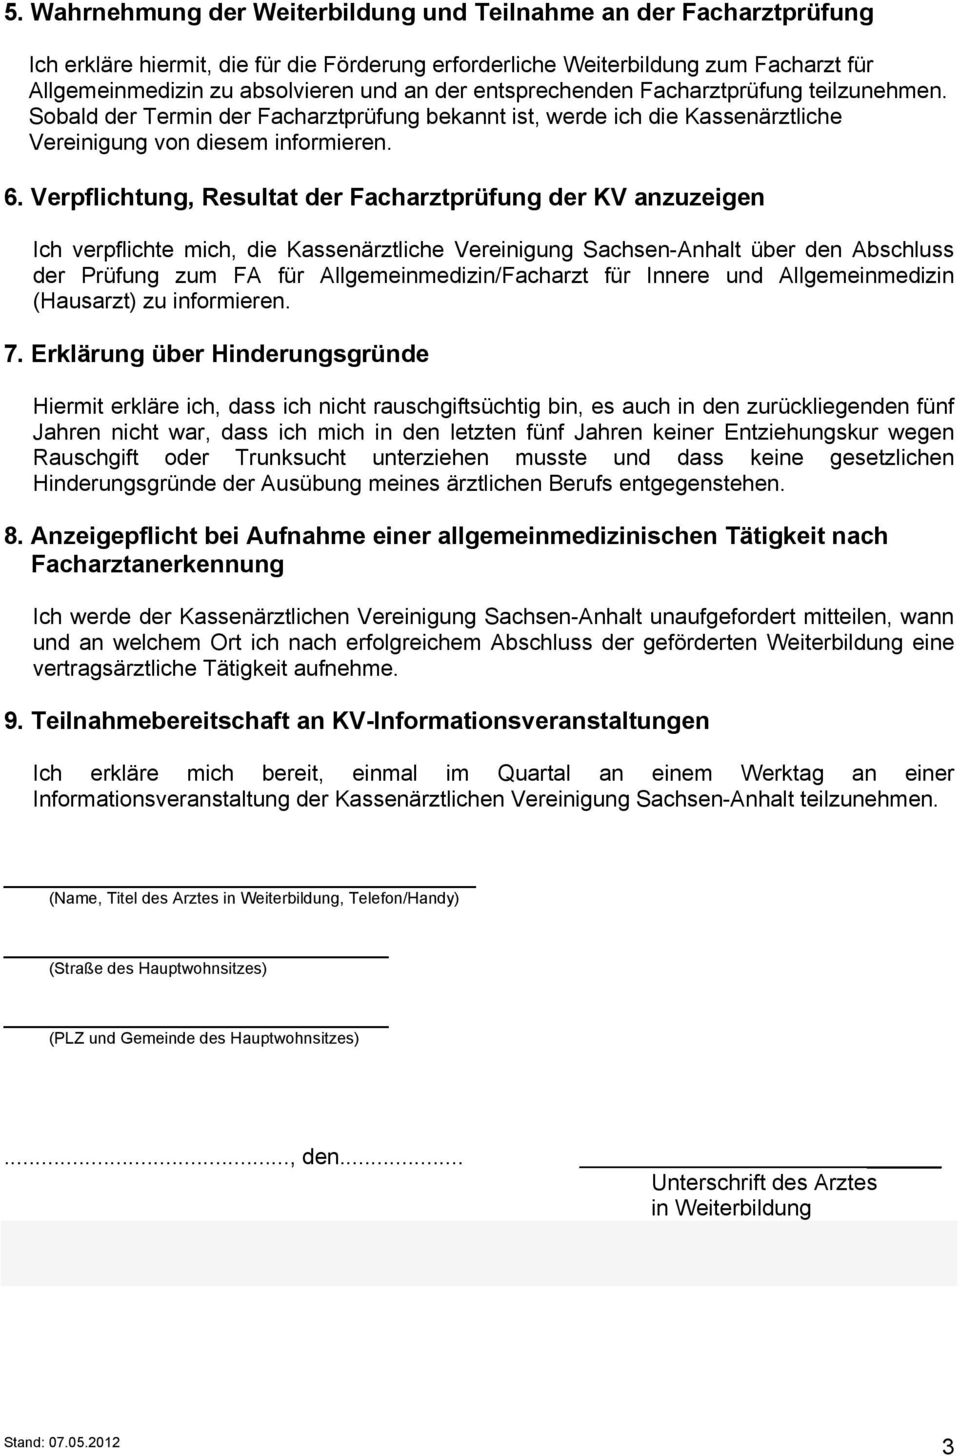 Verpflichtung, Resultat der Facharztprüfung der KV anzuzeigen Ich verpflichte mich, die Kassenärztliche Vereinigung Sachsen-Anhalt über den Abschluss der Prüfung zum FA für Allgemeinmedizin/Facharzt